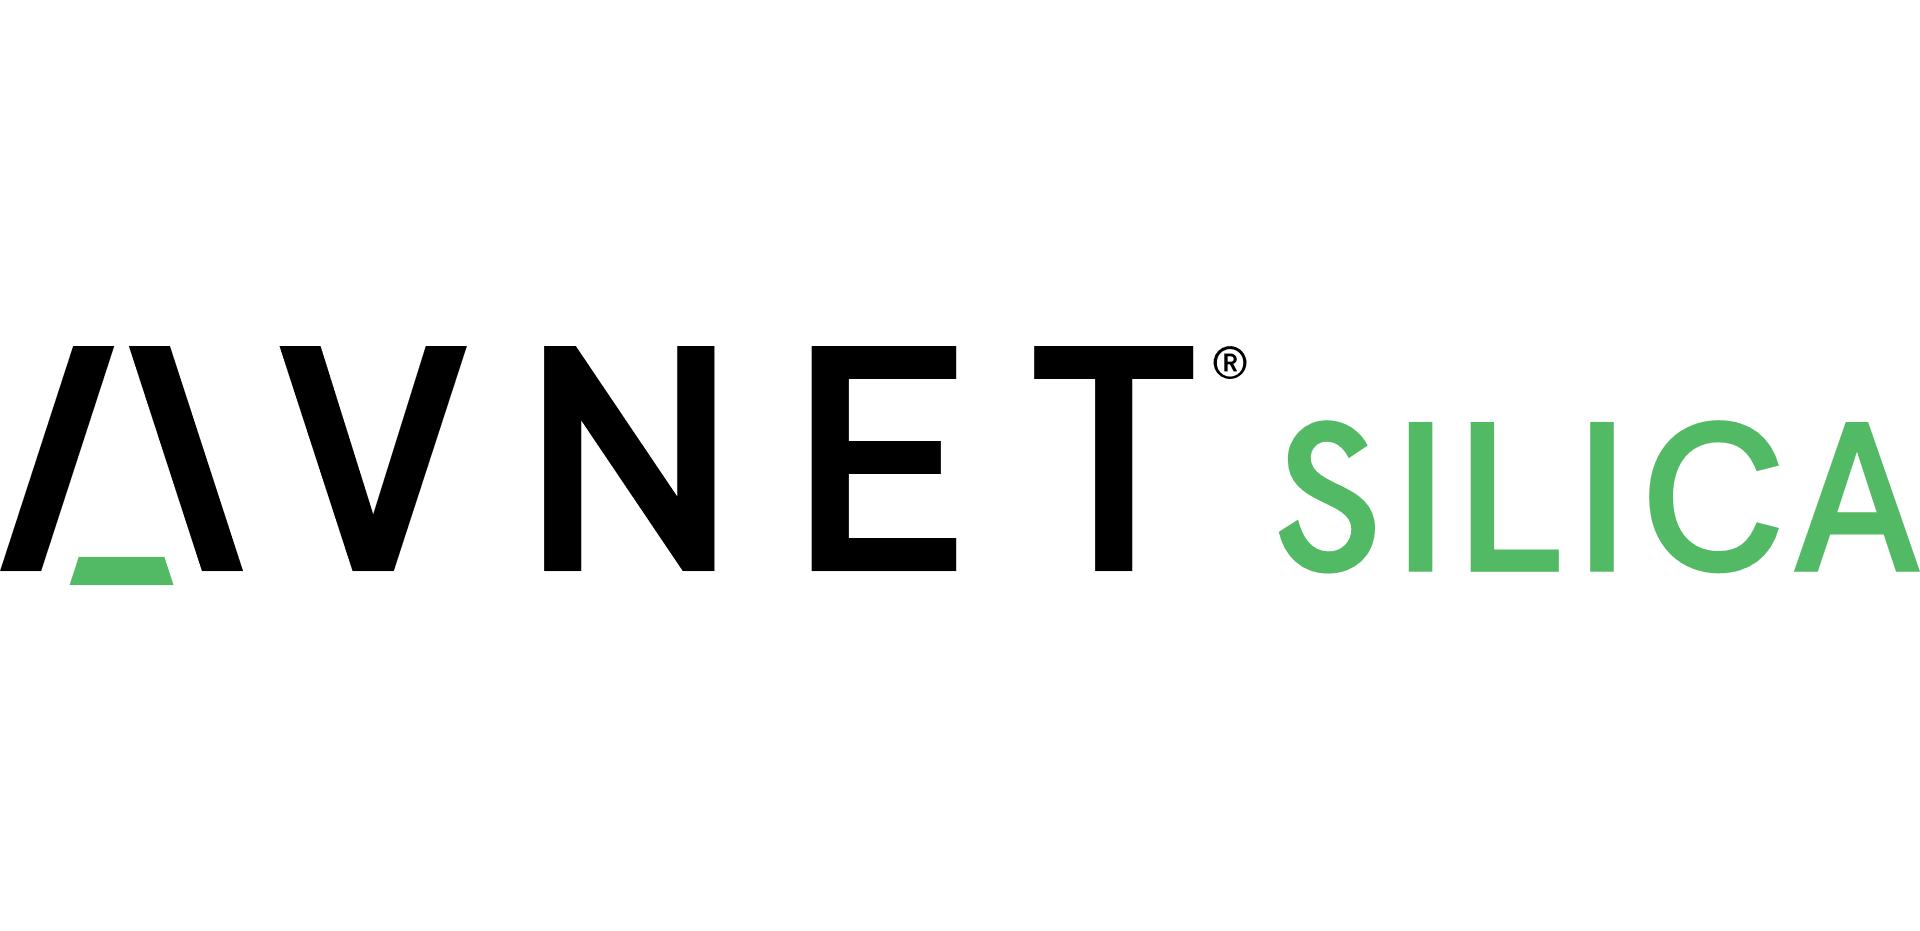 Avnet Launches New Logo, Glob